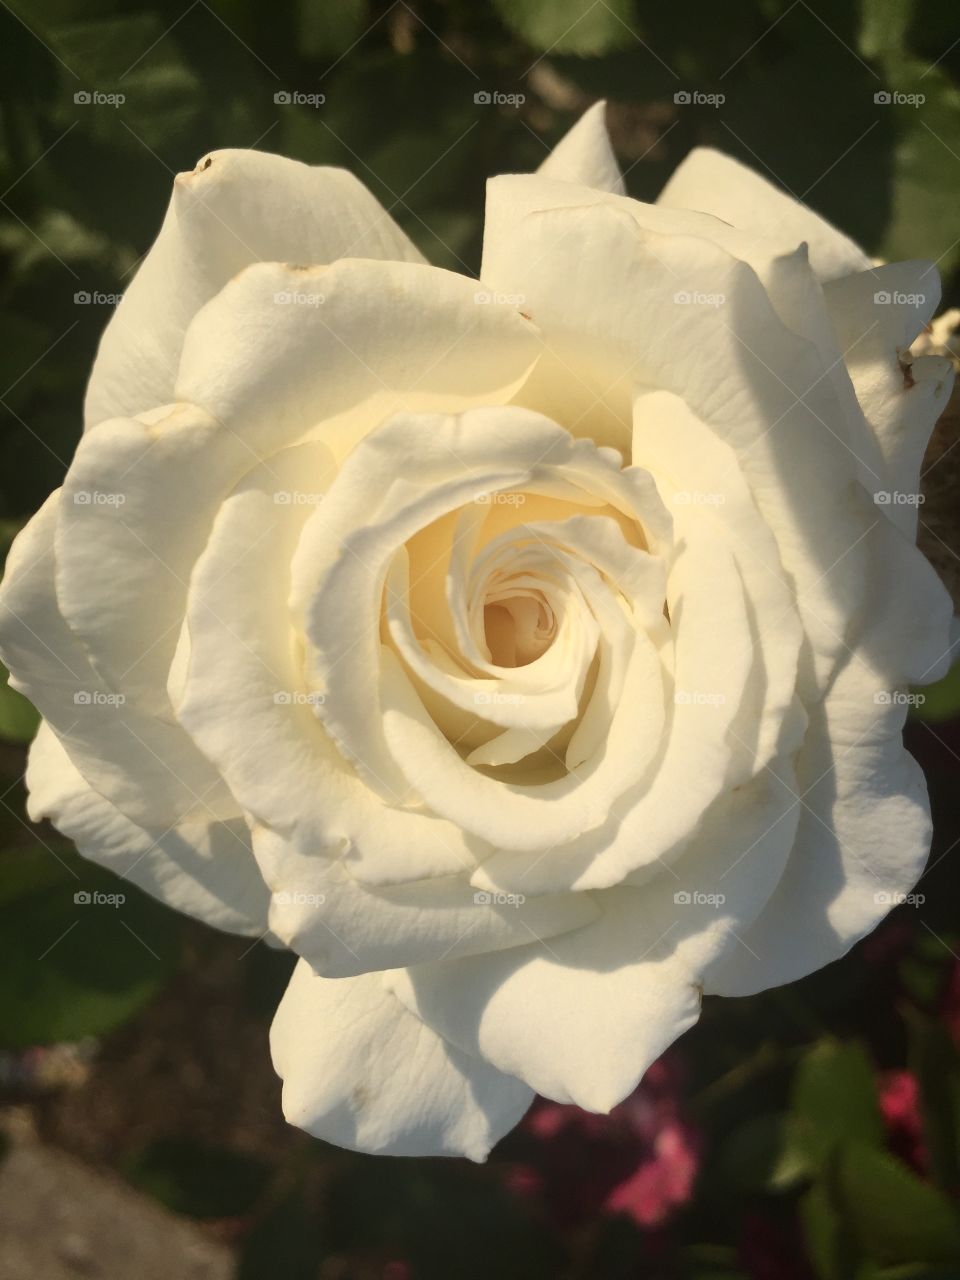 Flower, Rose, Petal, Wedding, Blooming